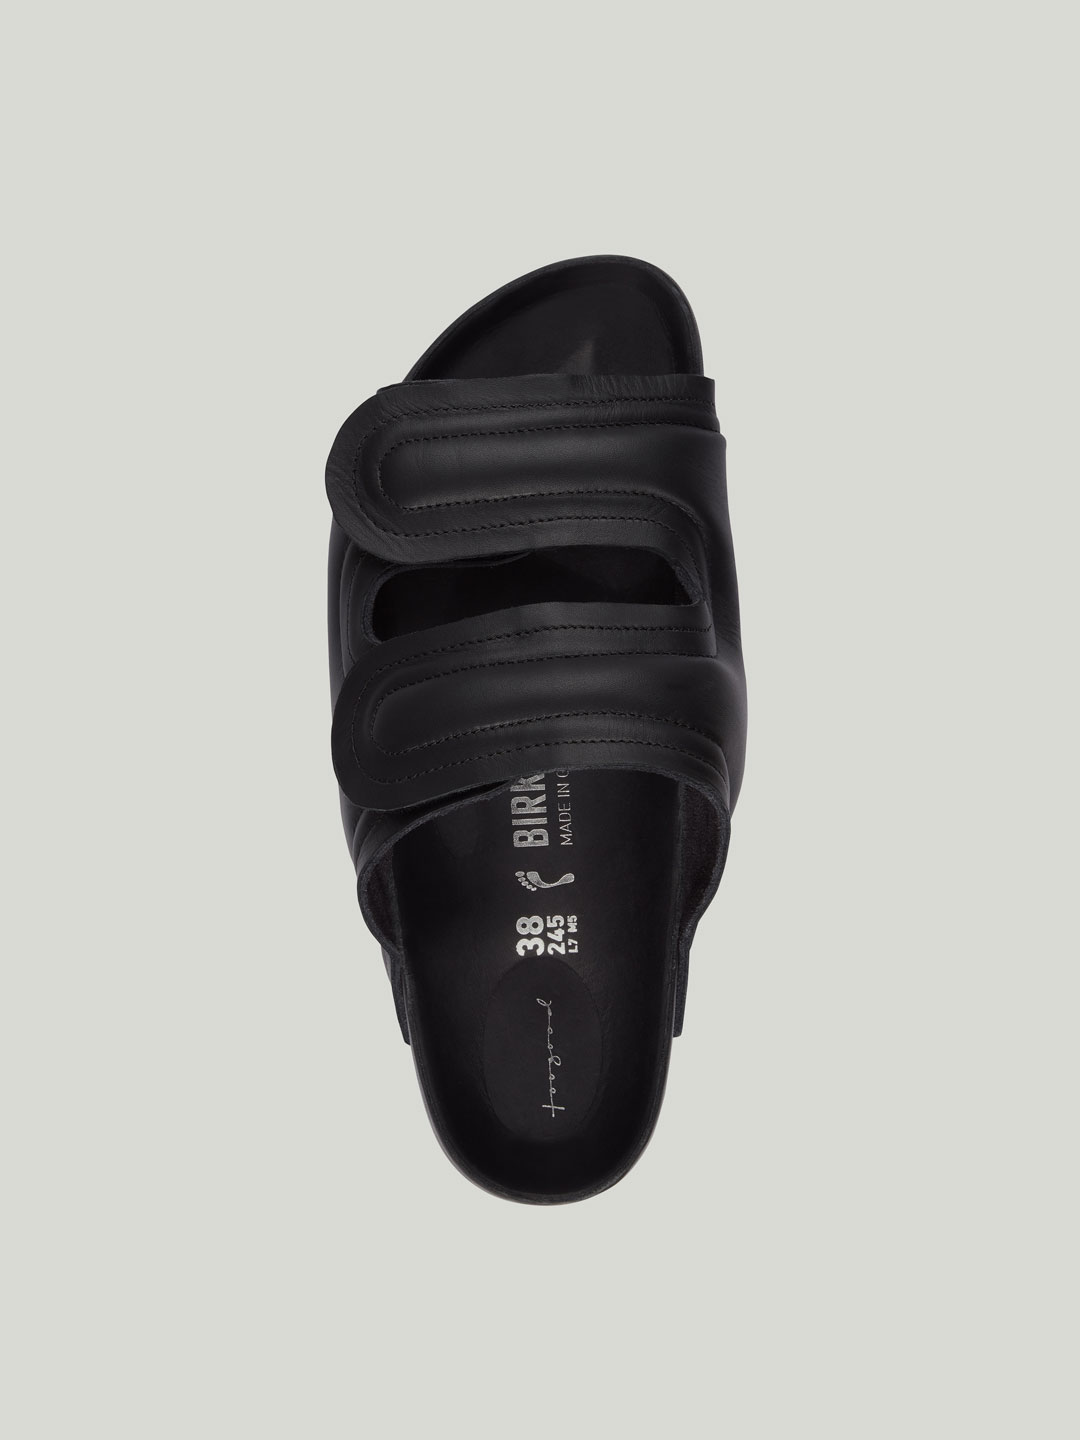 Birkenstock x Toogood Shoes(ビルケンシュトック x トゥーグッド シューズ) | マッドラーカー プレミアム サンダル -  ブラック | ESCAPERS ONLINE(エスケーパーズ オンライン)公式通販サイト